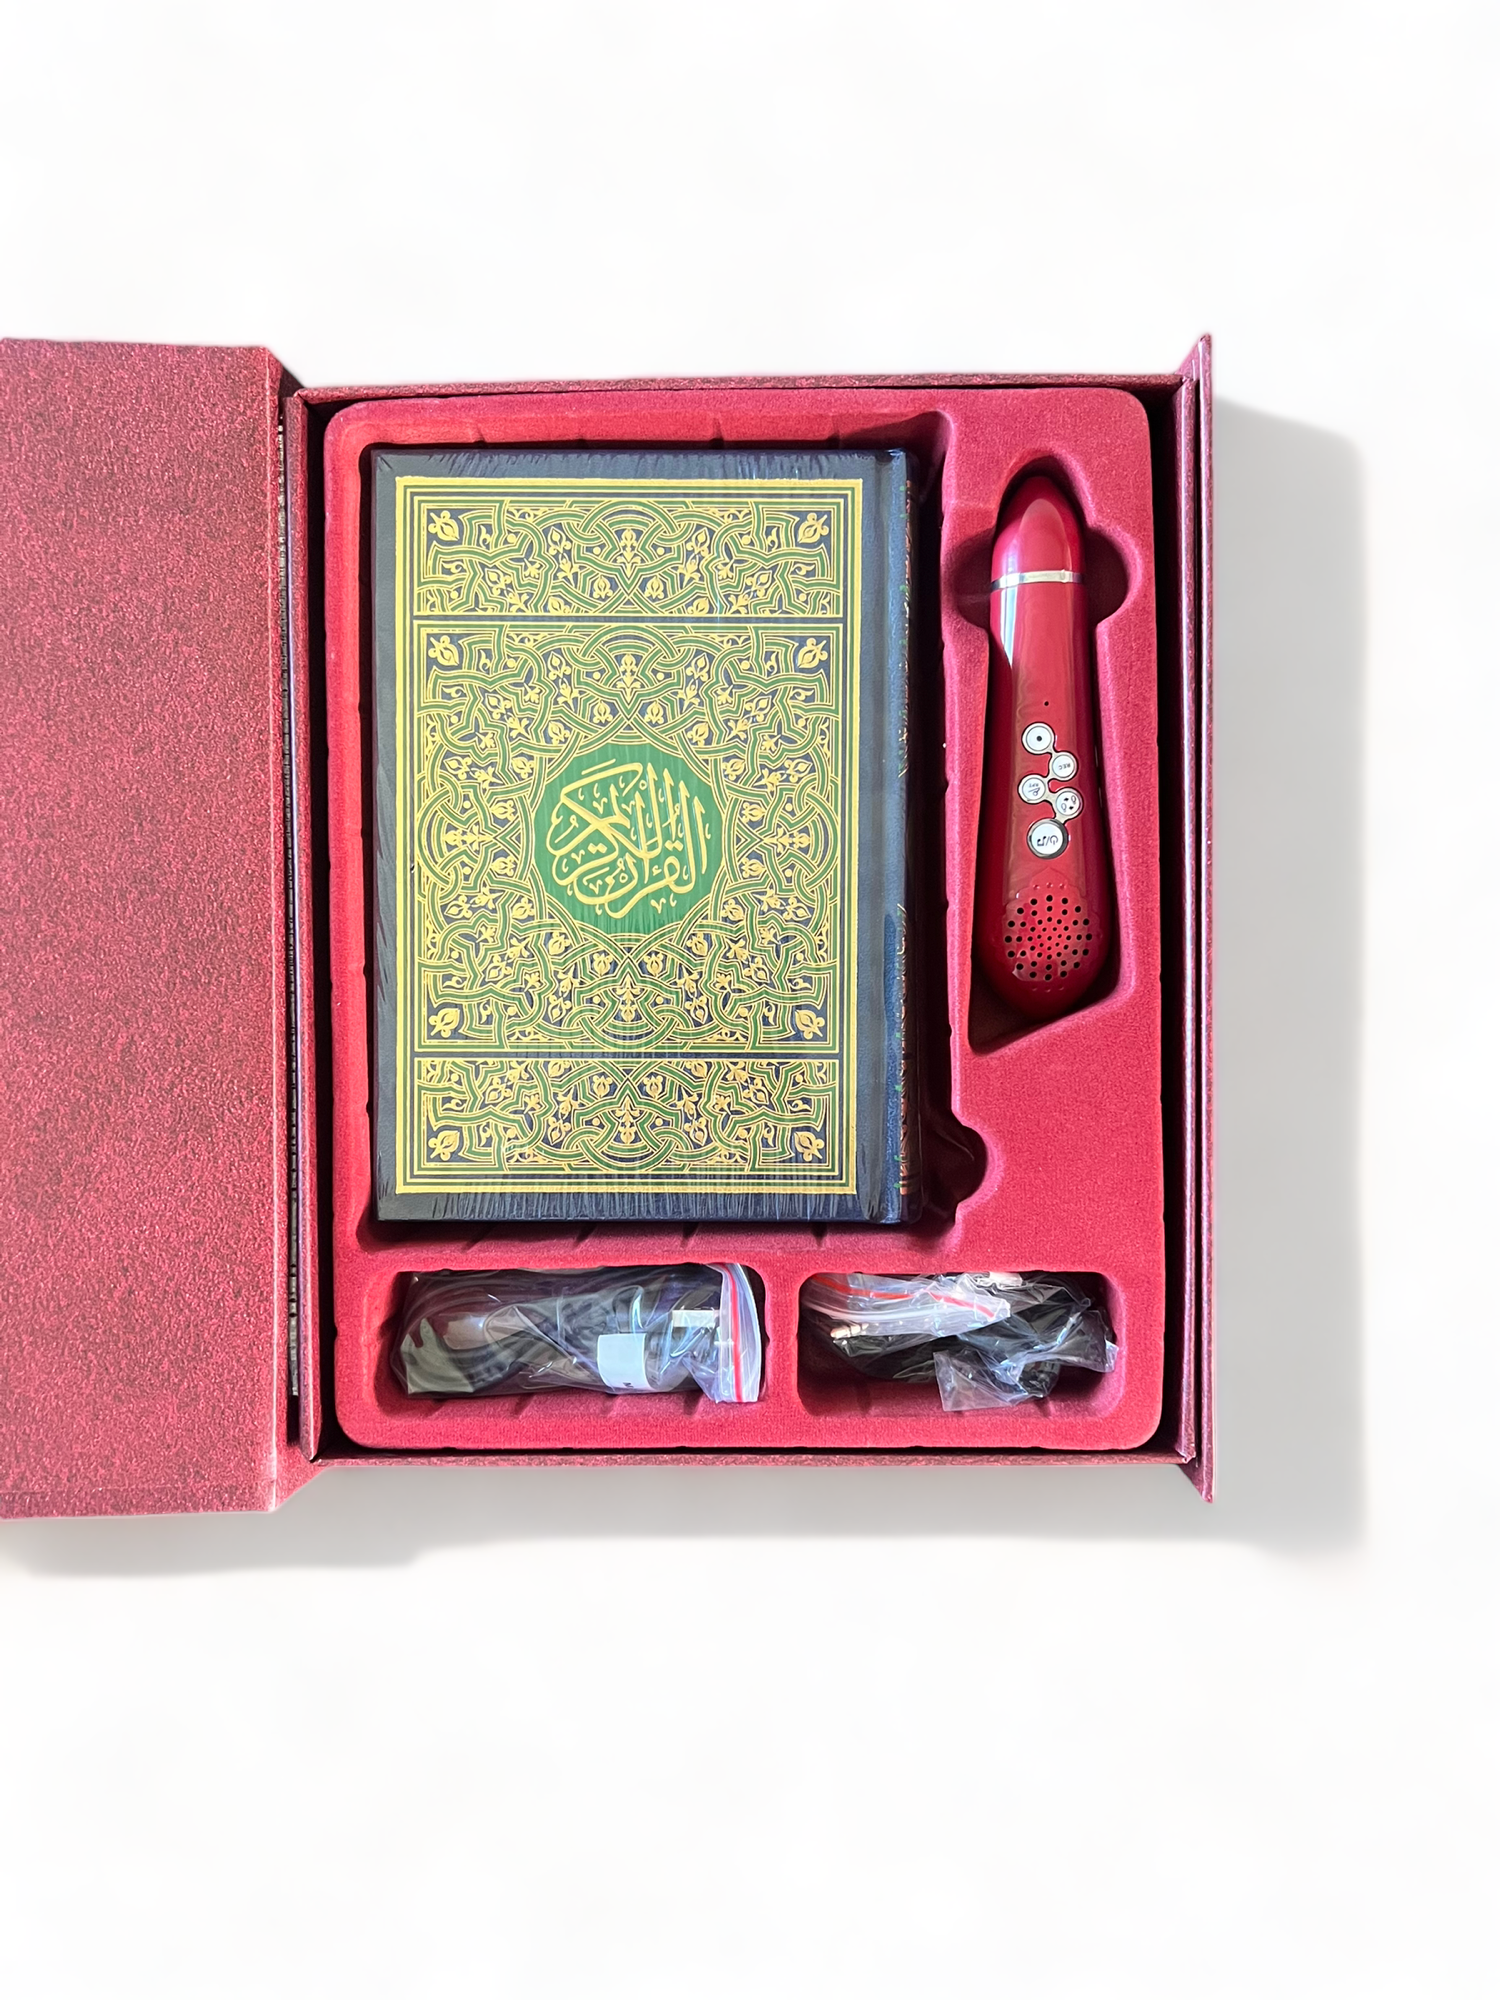 Koran met elektronische pen (8 Gb - 18 voordragers) met multifunctionele Koran voor meerdere boeken (GROOT FORMAAT)